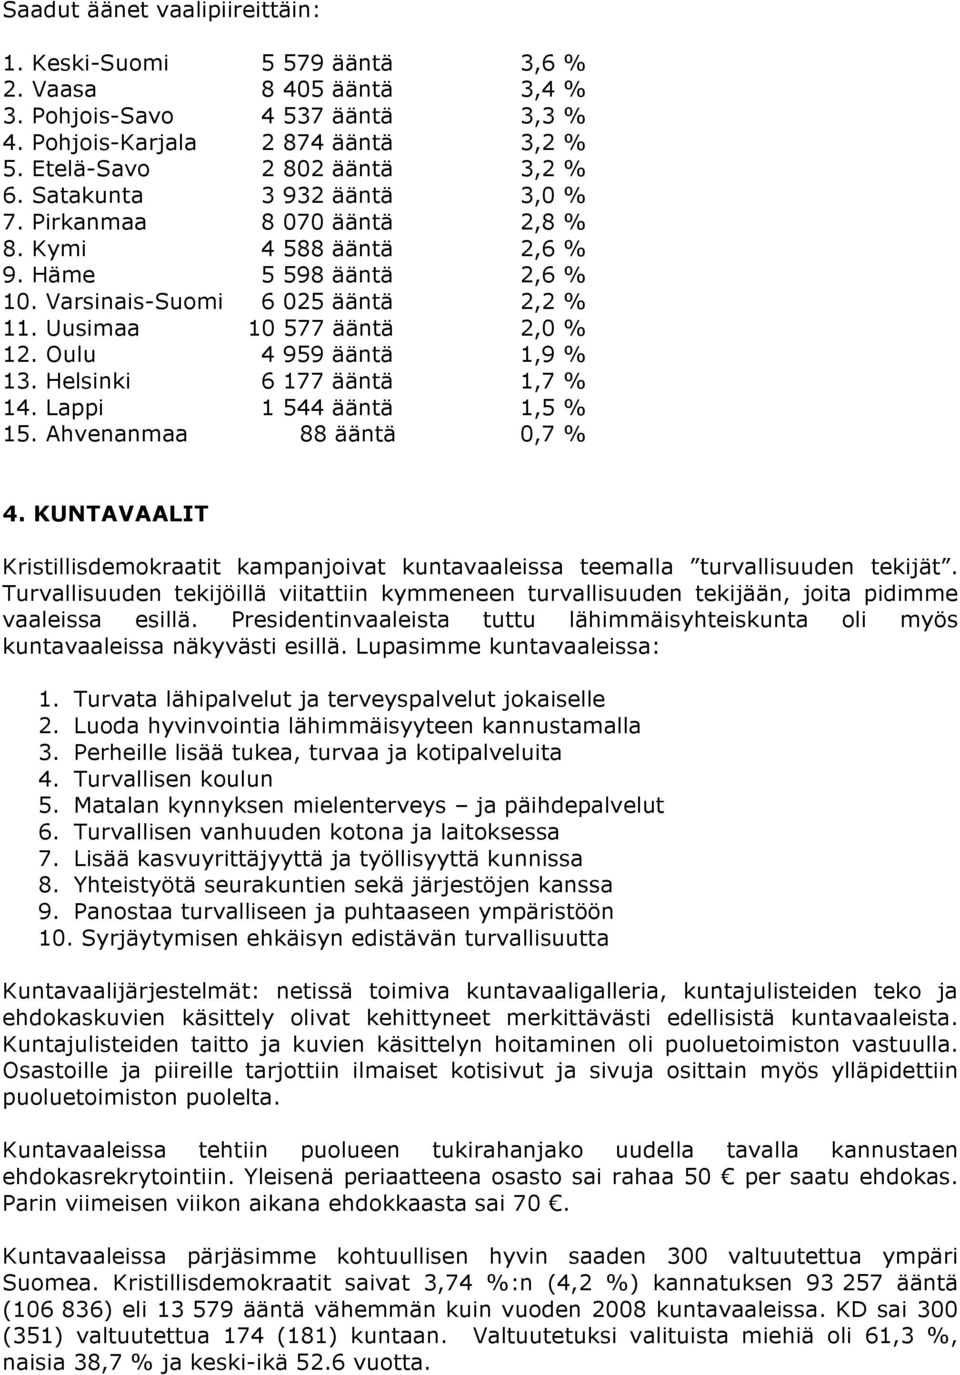 Oulu 4 959 ääntä 1,9 % 13. Helsinki 6 177 ääntä 1,7 % 14. Lappi 1 544 ääntä 1,5 % 15. Ahvenanmaa 88 ääntä 0,7 % 4.